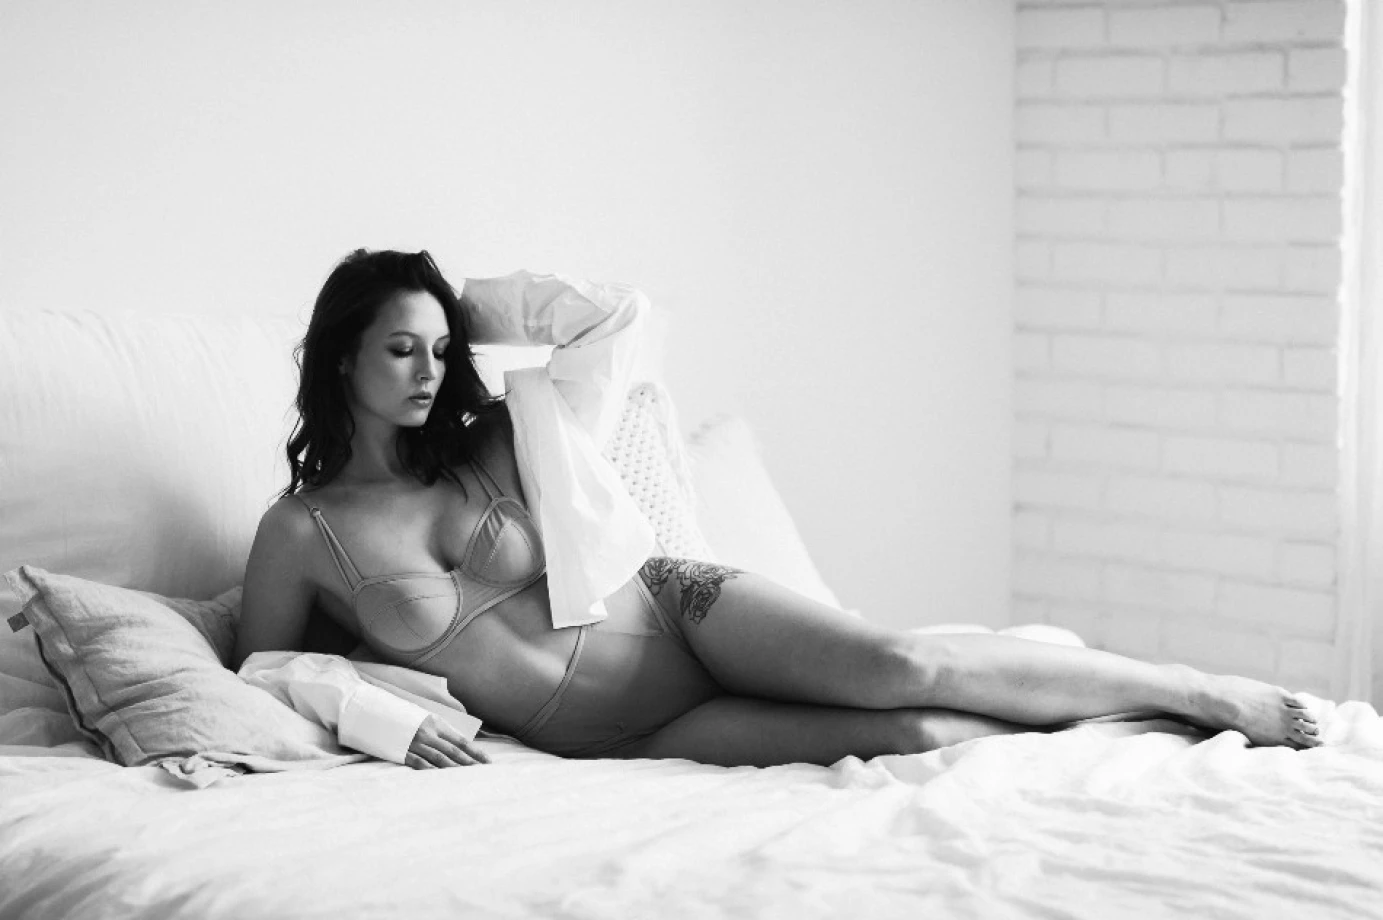 fotograf wroclaw mateusz-grzebny-photography portfolio sesja kobieca sensualna boudair sexy